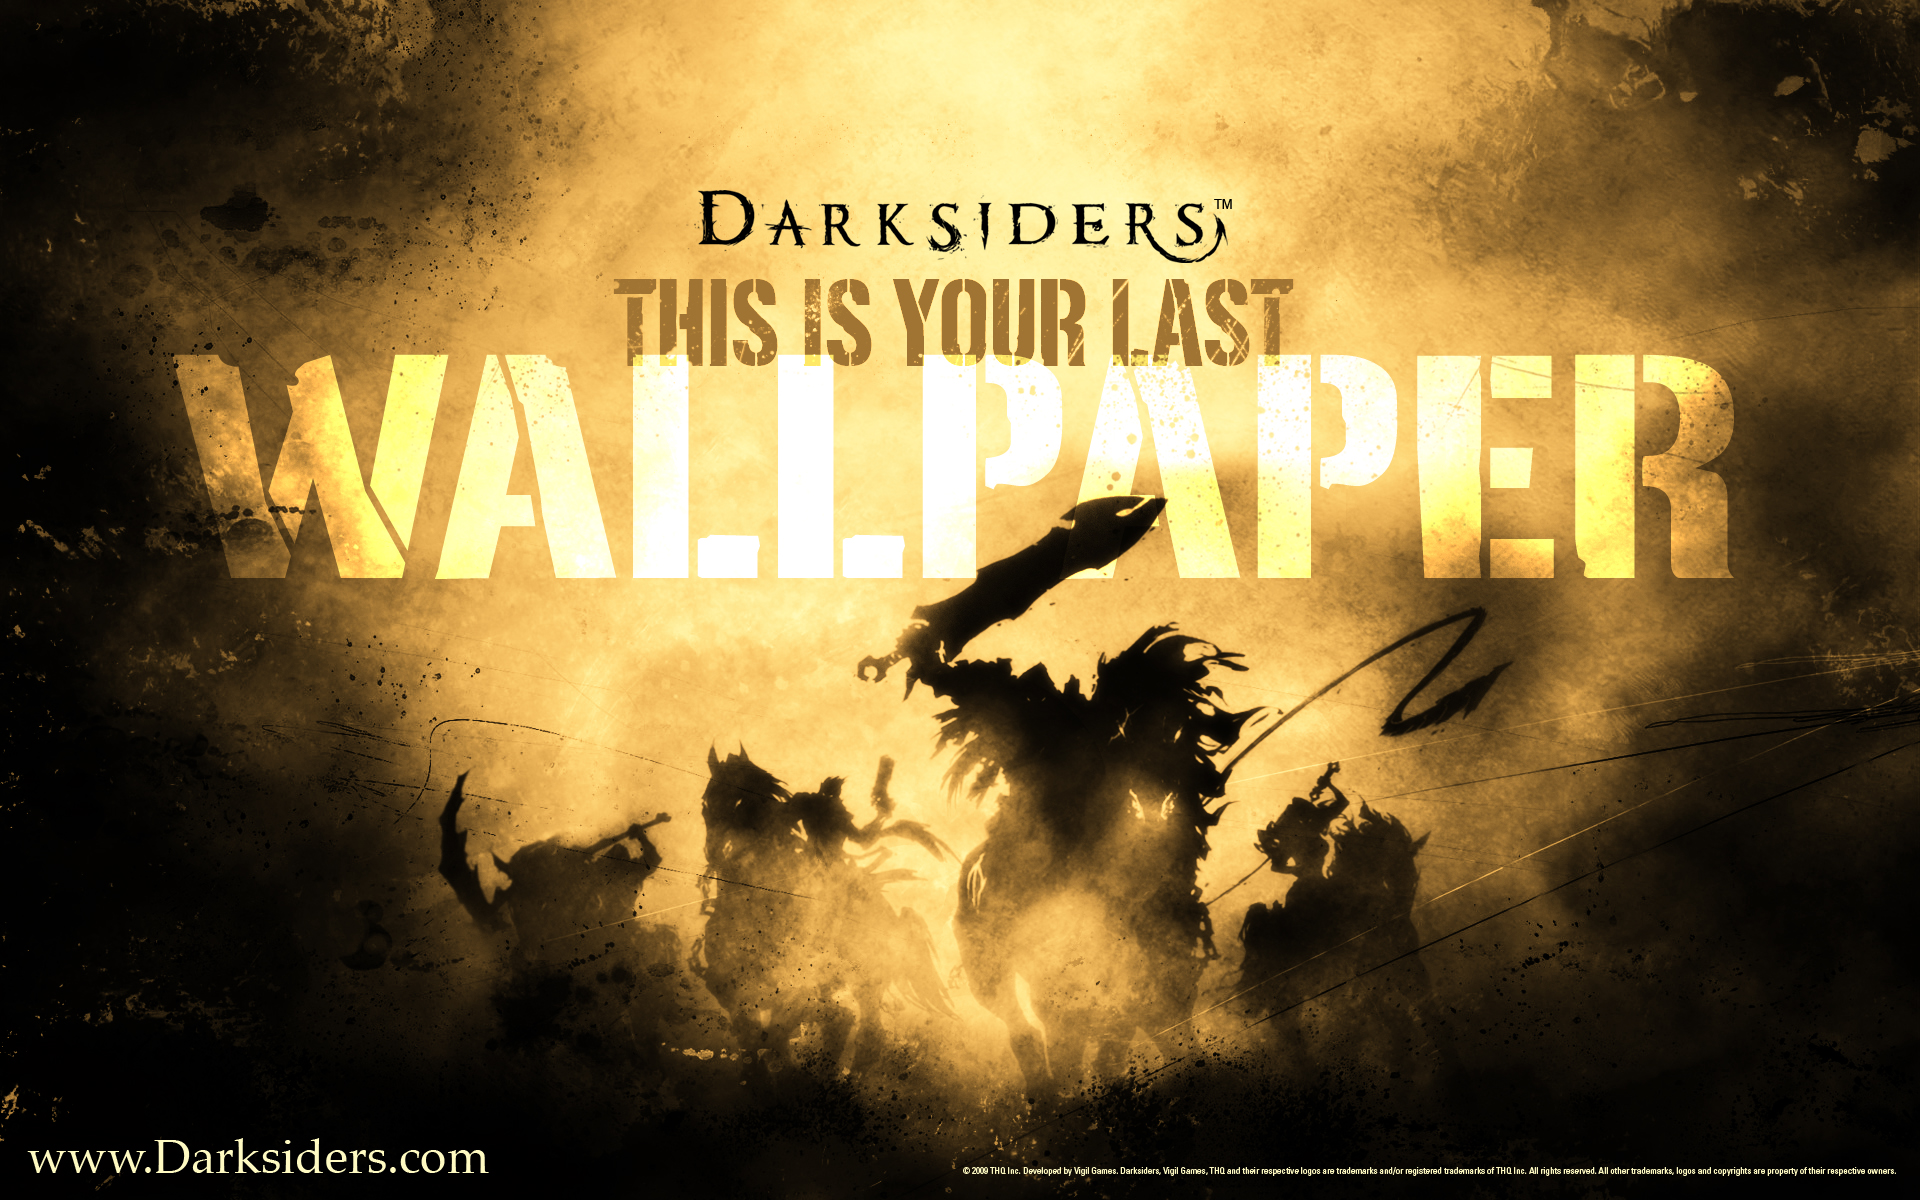 Darksiders - desktop wallpaper